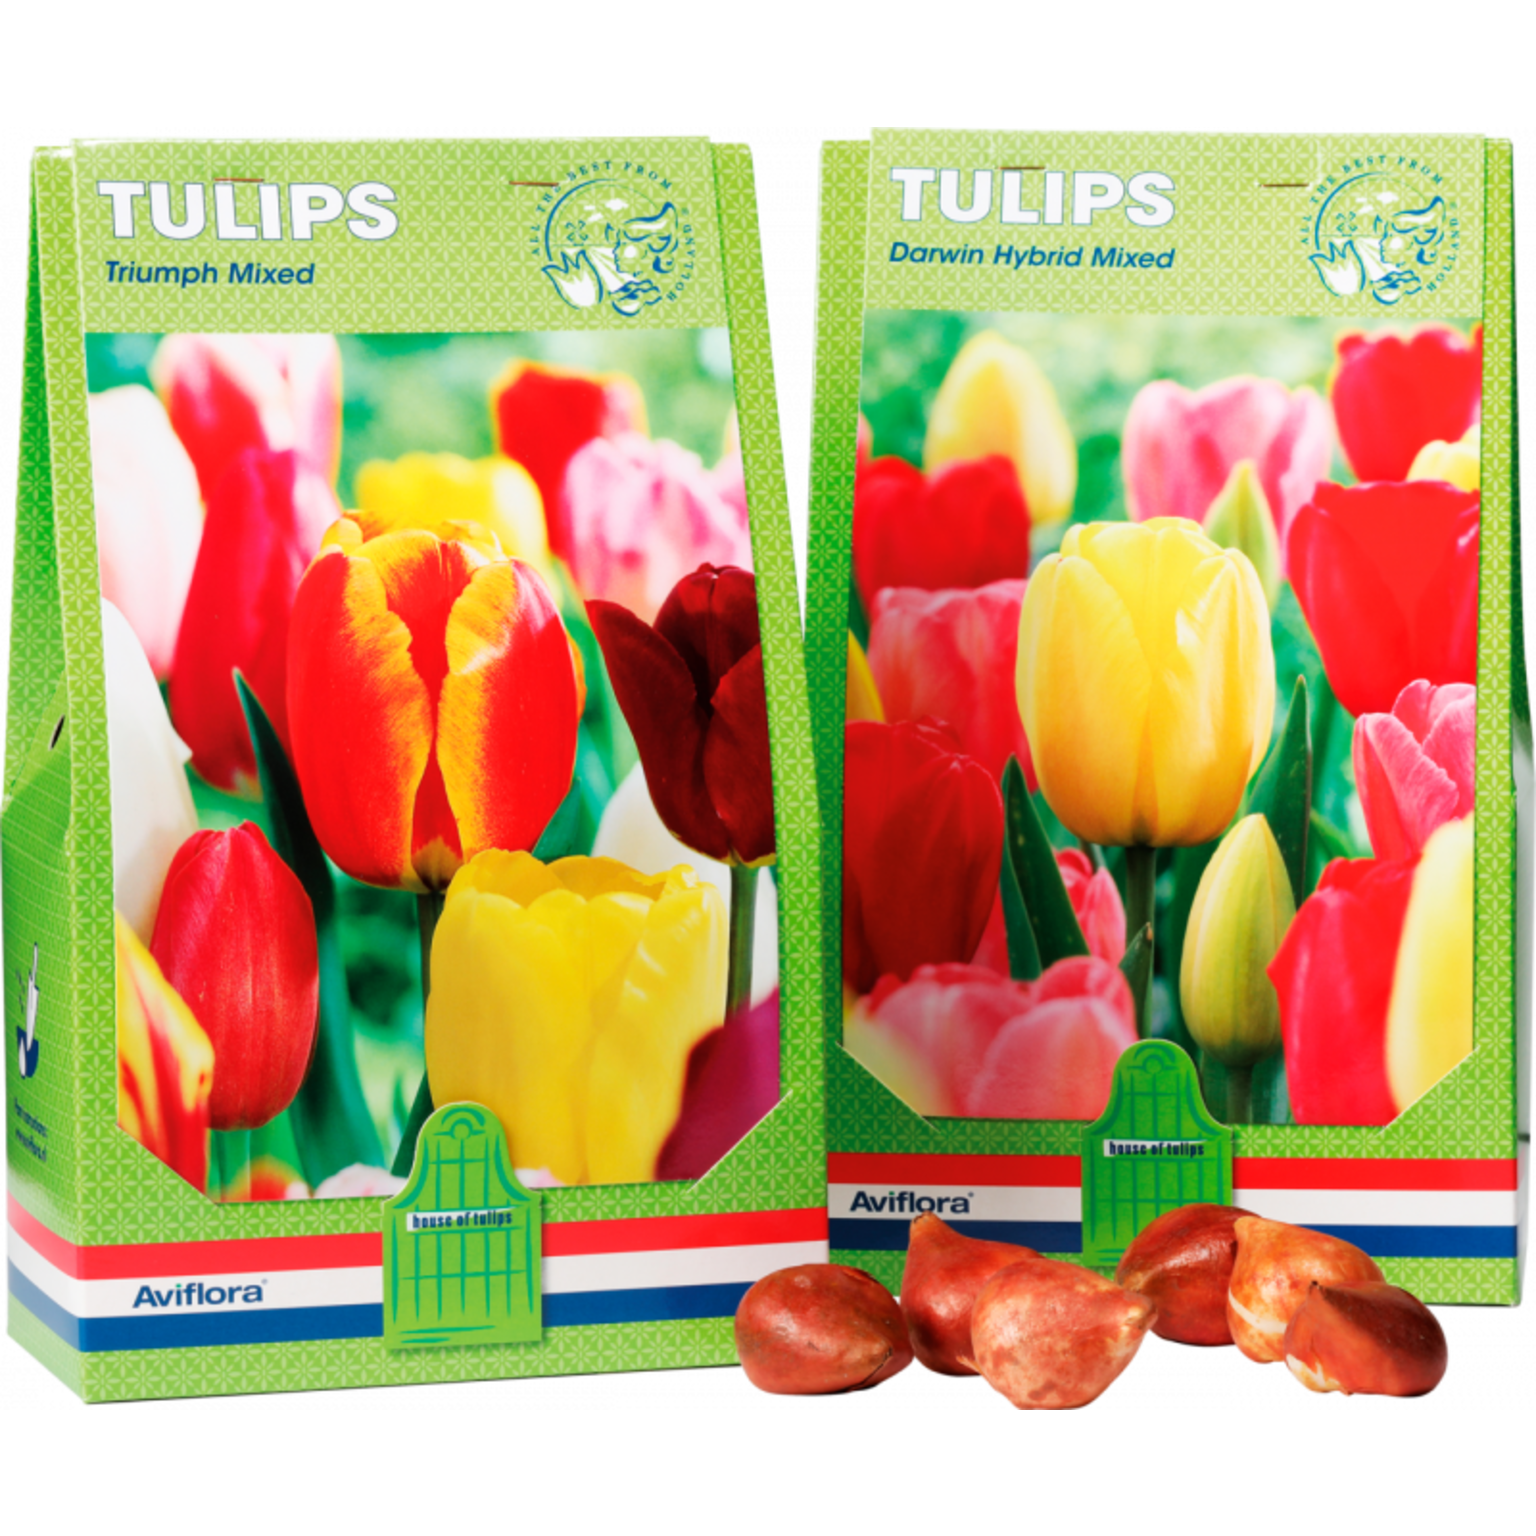 Dutch Tulip bulbs